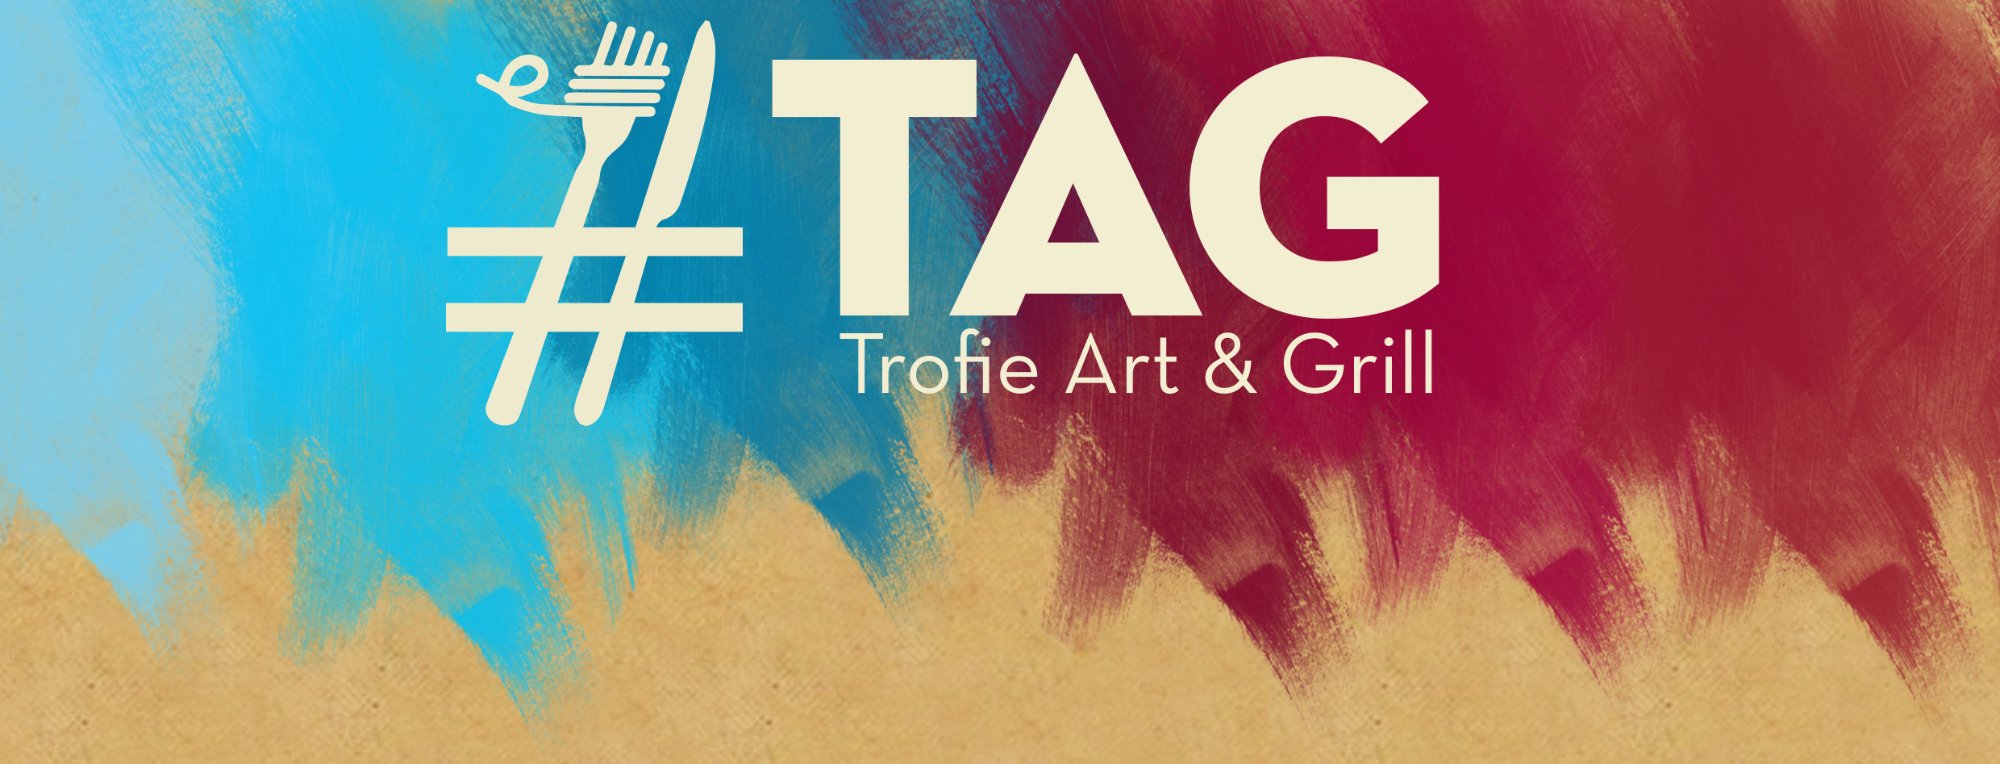 Tag - Trofie Art & Grill, Genova